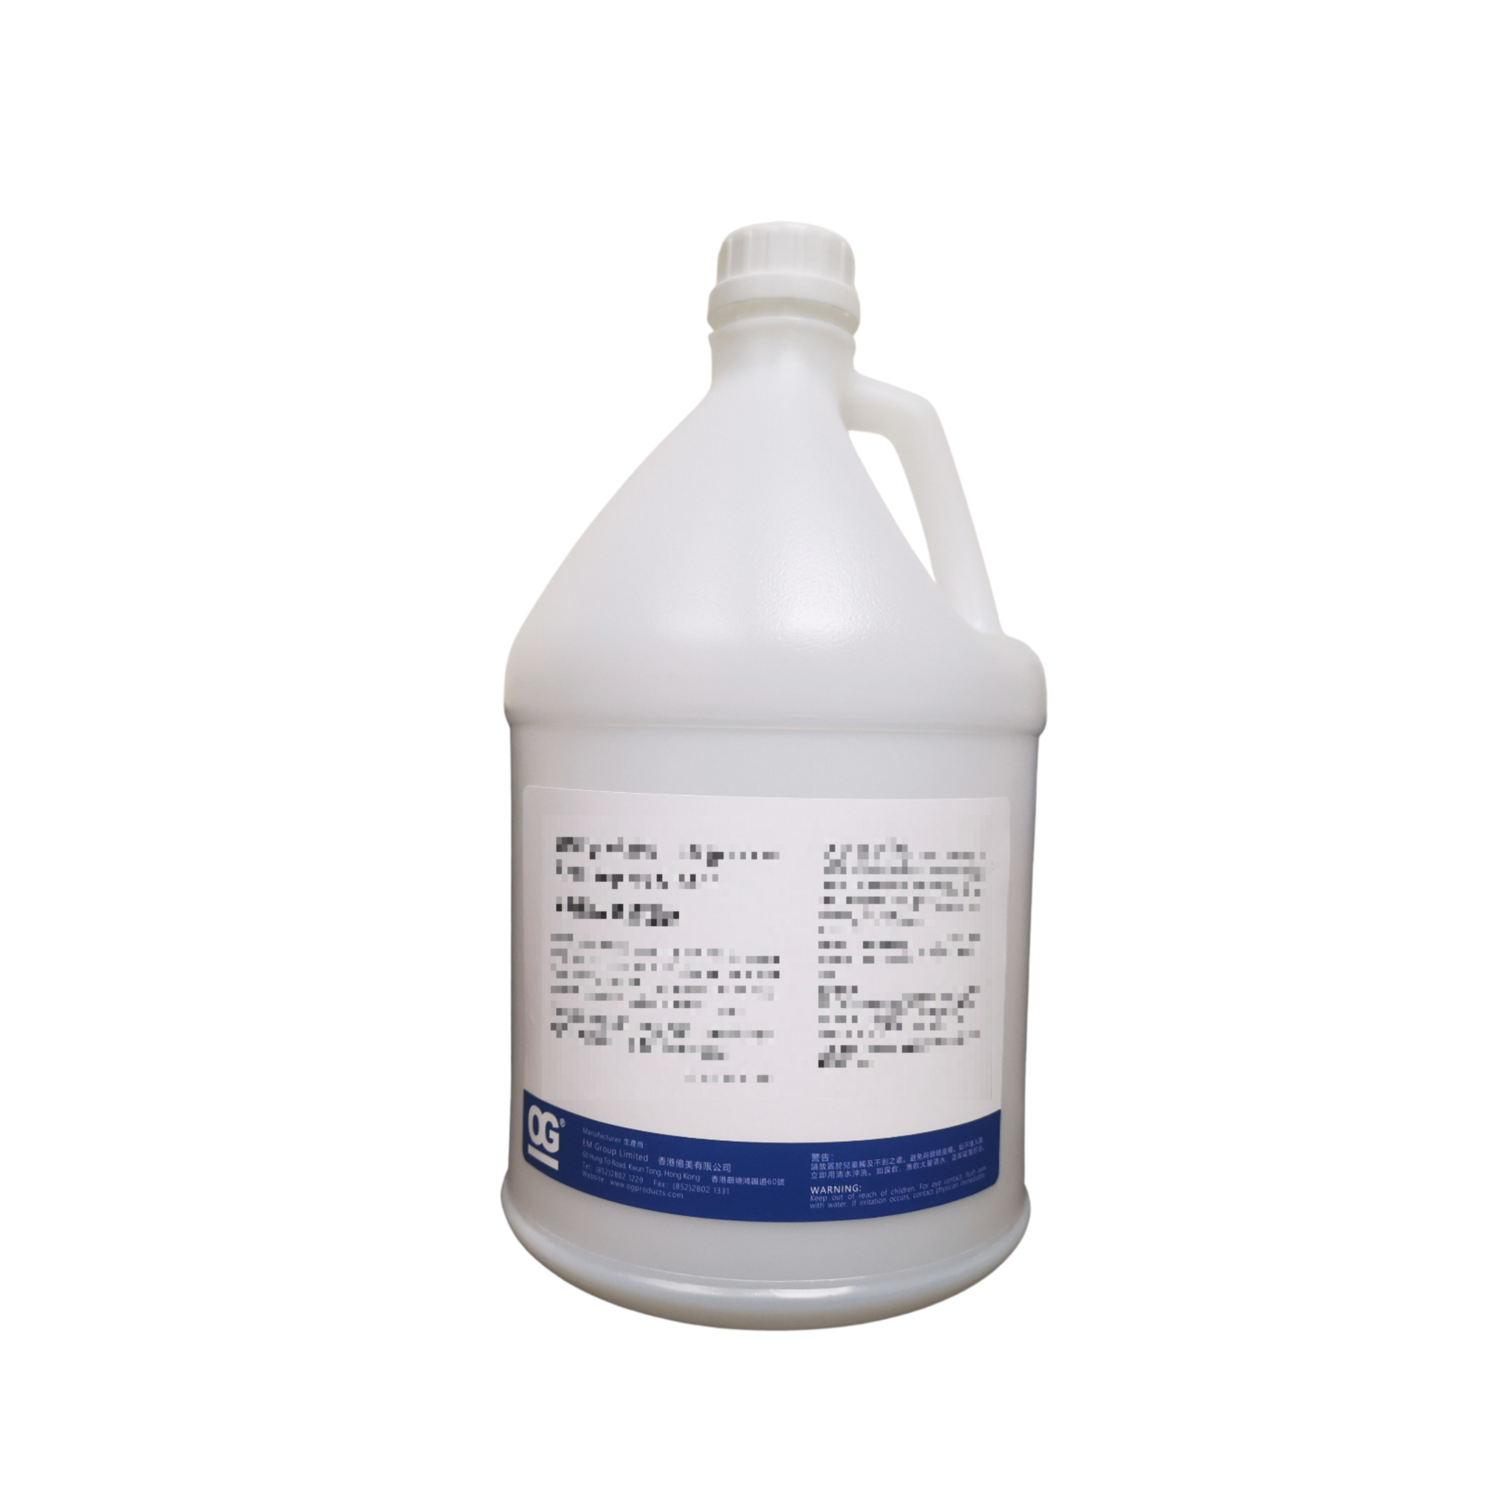 Pre-soak Destainer (Liquid) - 1Gal